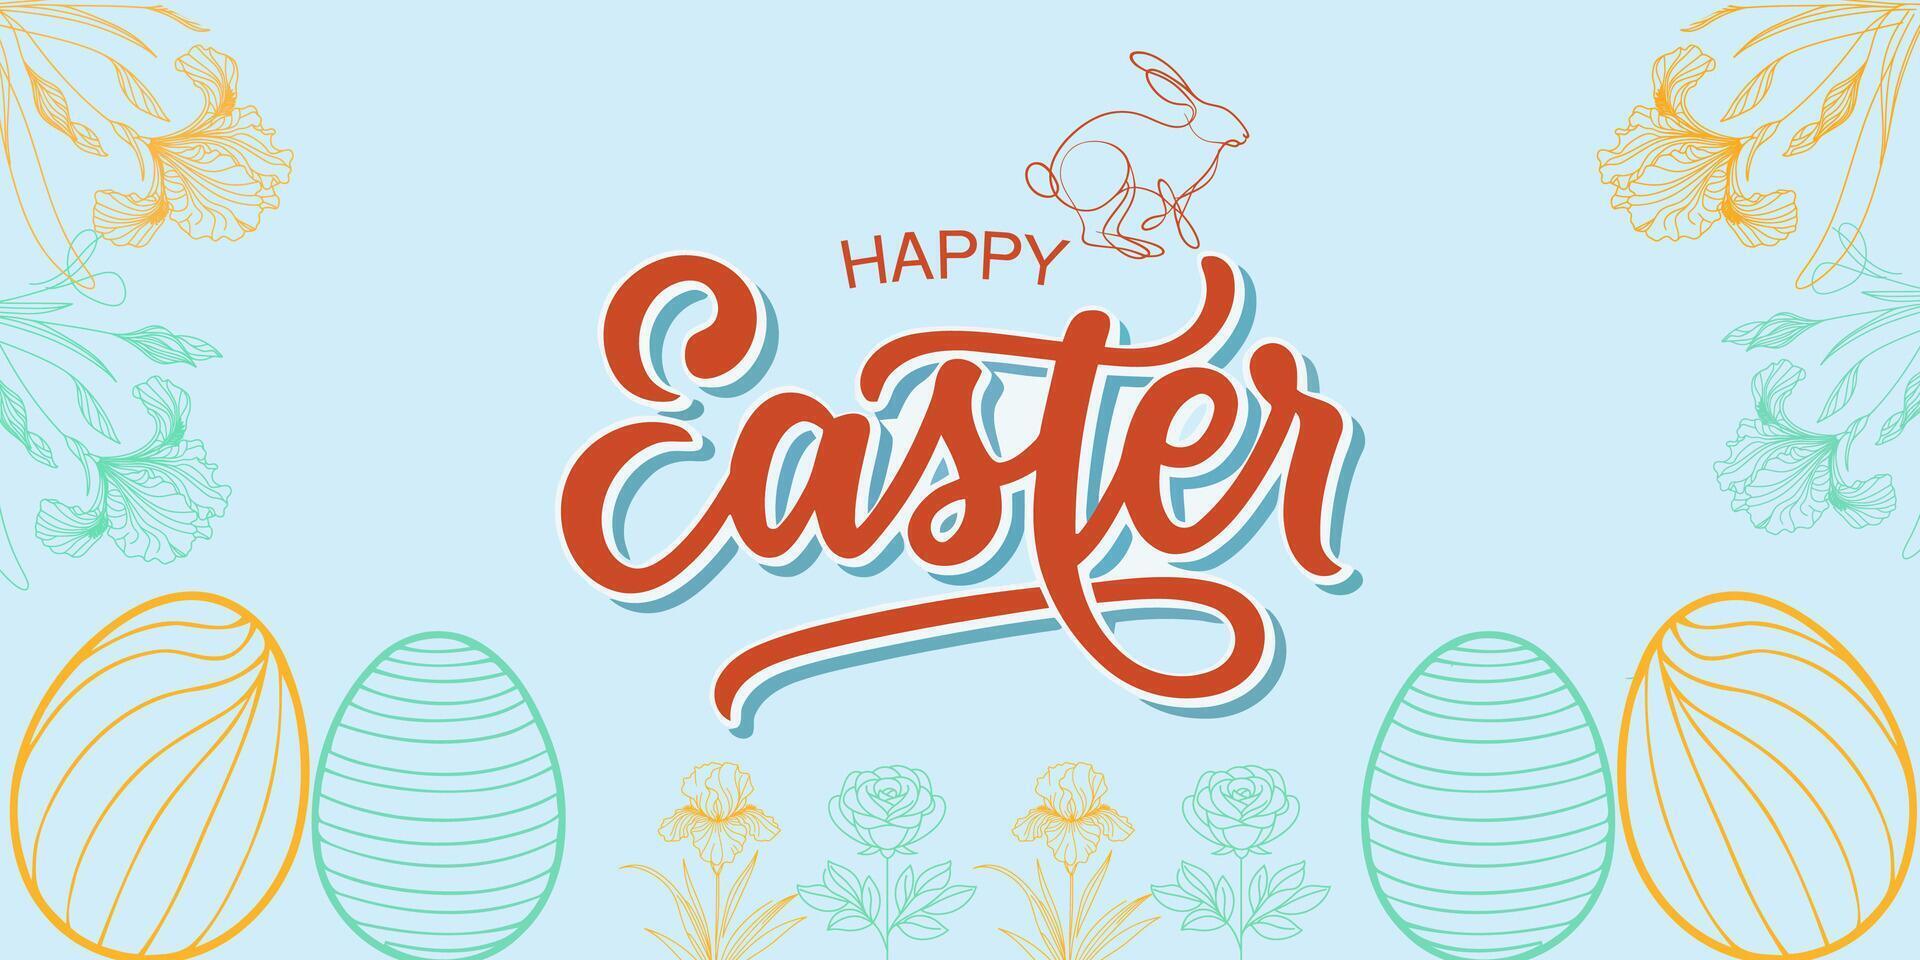 gelukkig Pasen illustratie met konijntjes, eieren, en bloemen in een modern stijl ontwerp met pastel kleuren vector